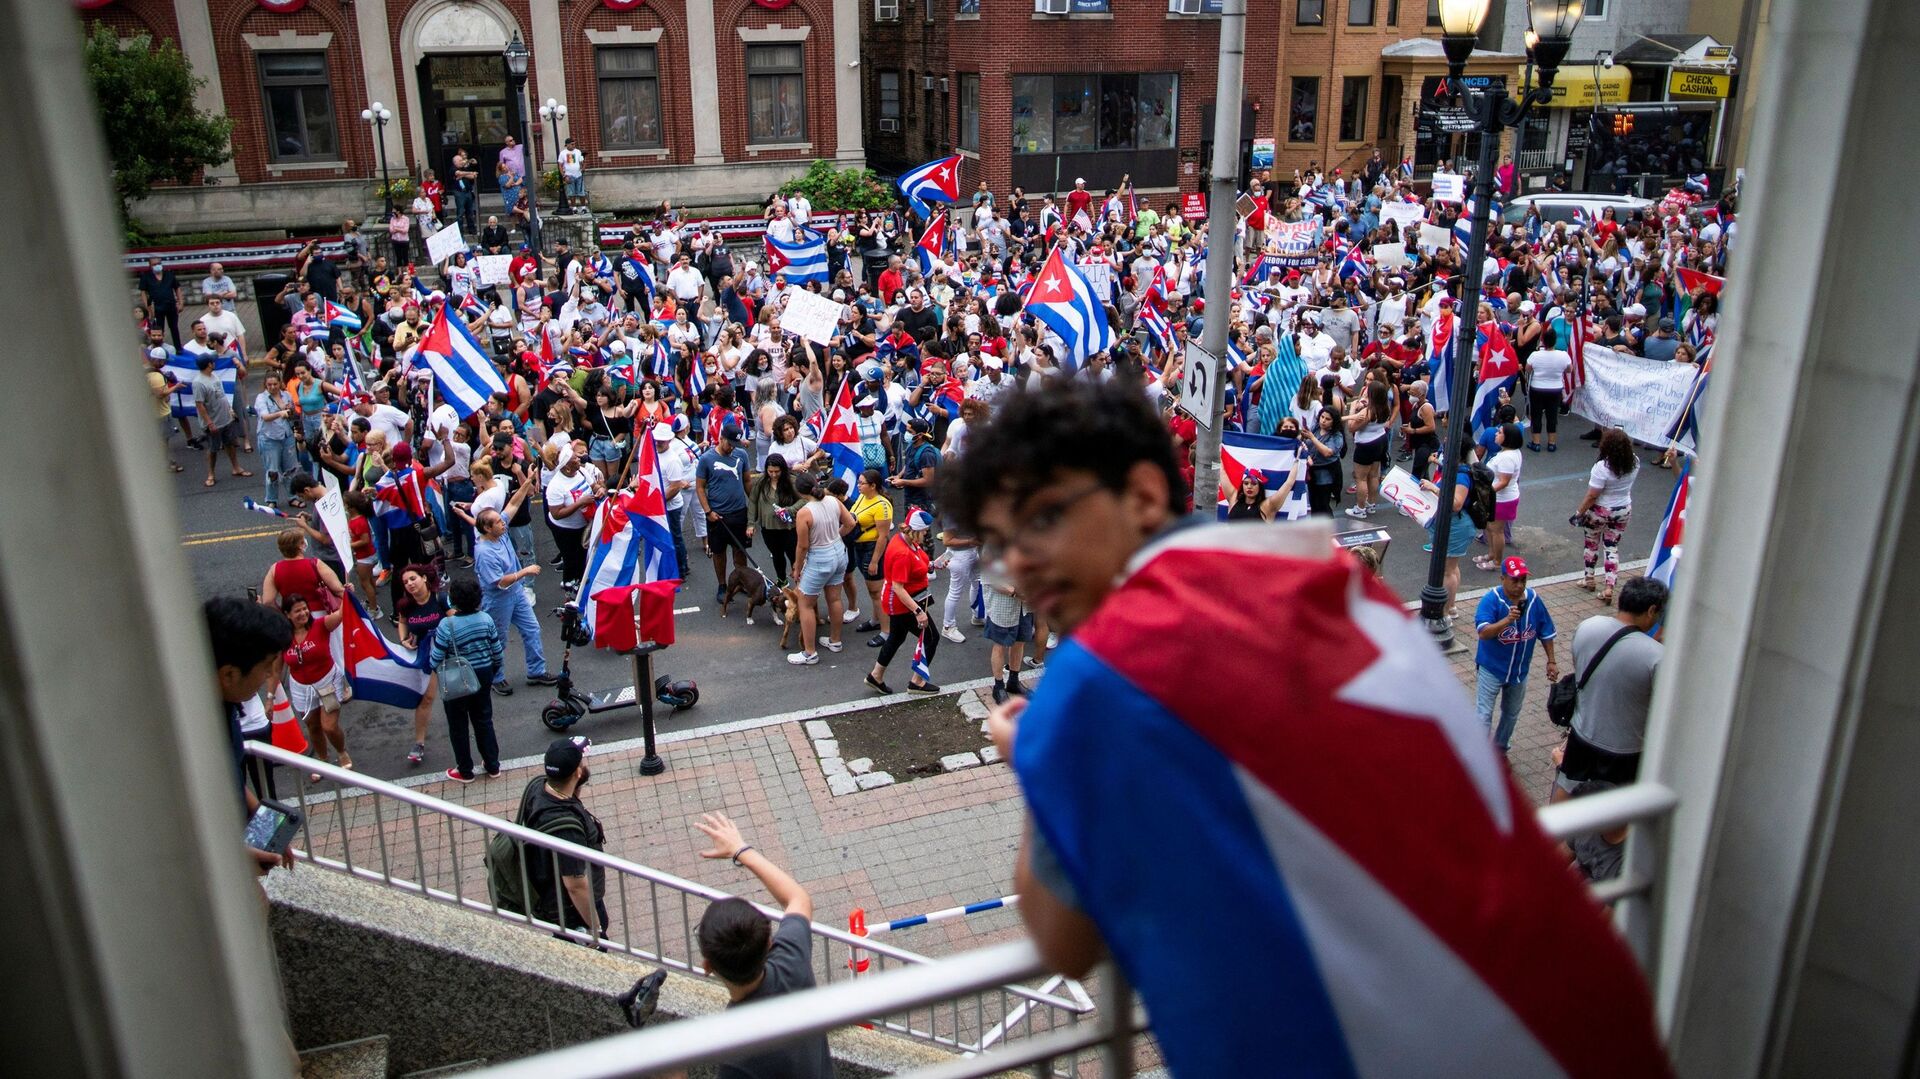 Чланови кубанске заједнице марширају и одговарају на извештаје о протестима Кубе у Њу Џерсију, САД - Sputnik Србија, 1920, 16.07.2021